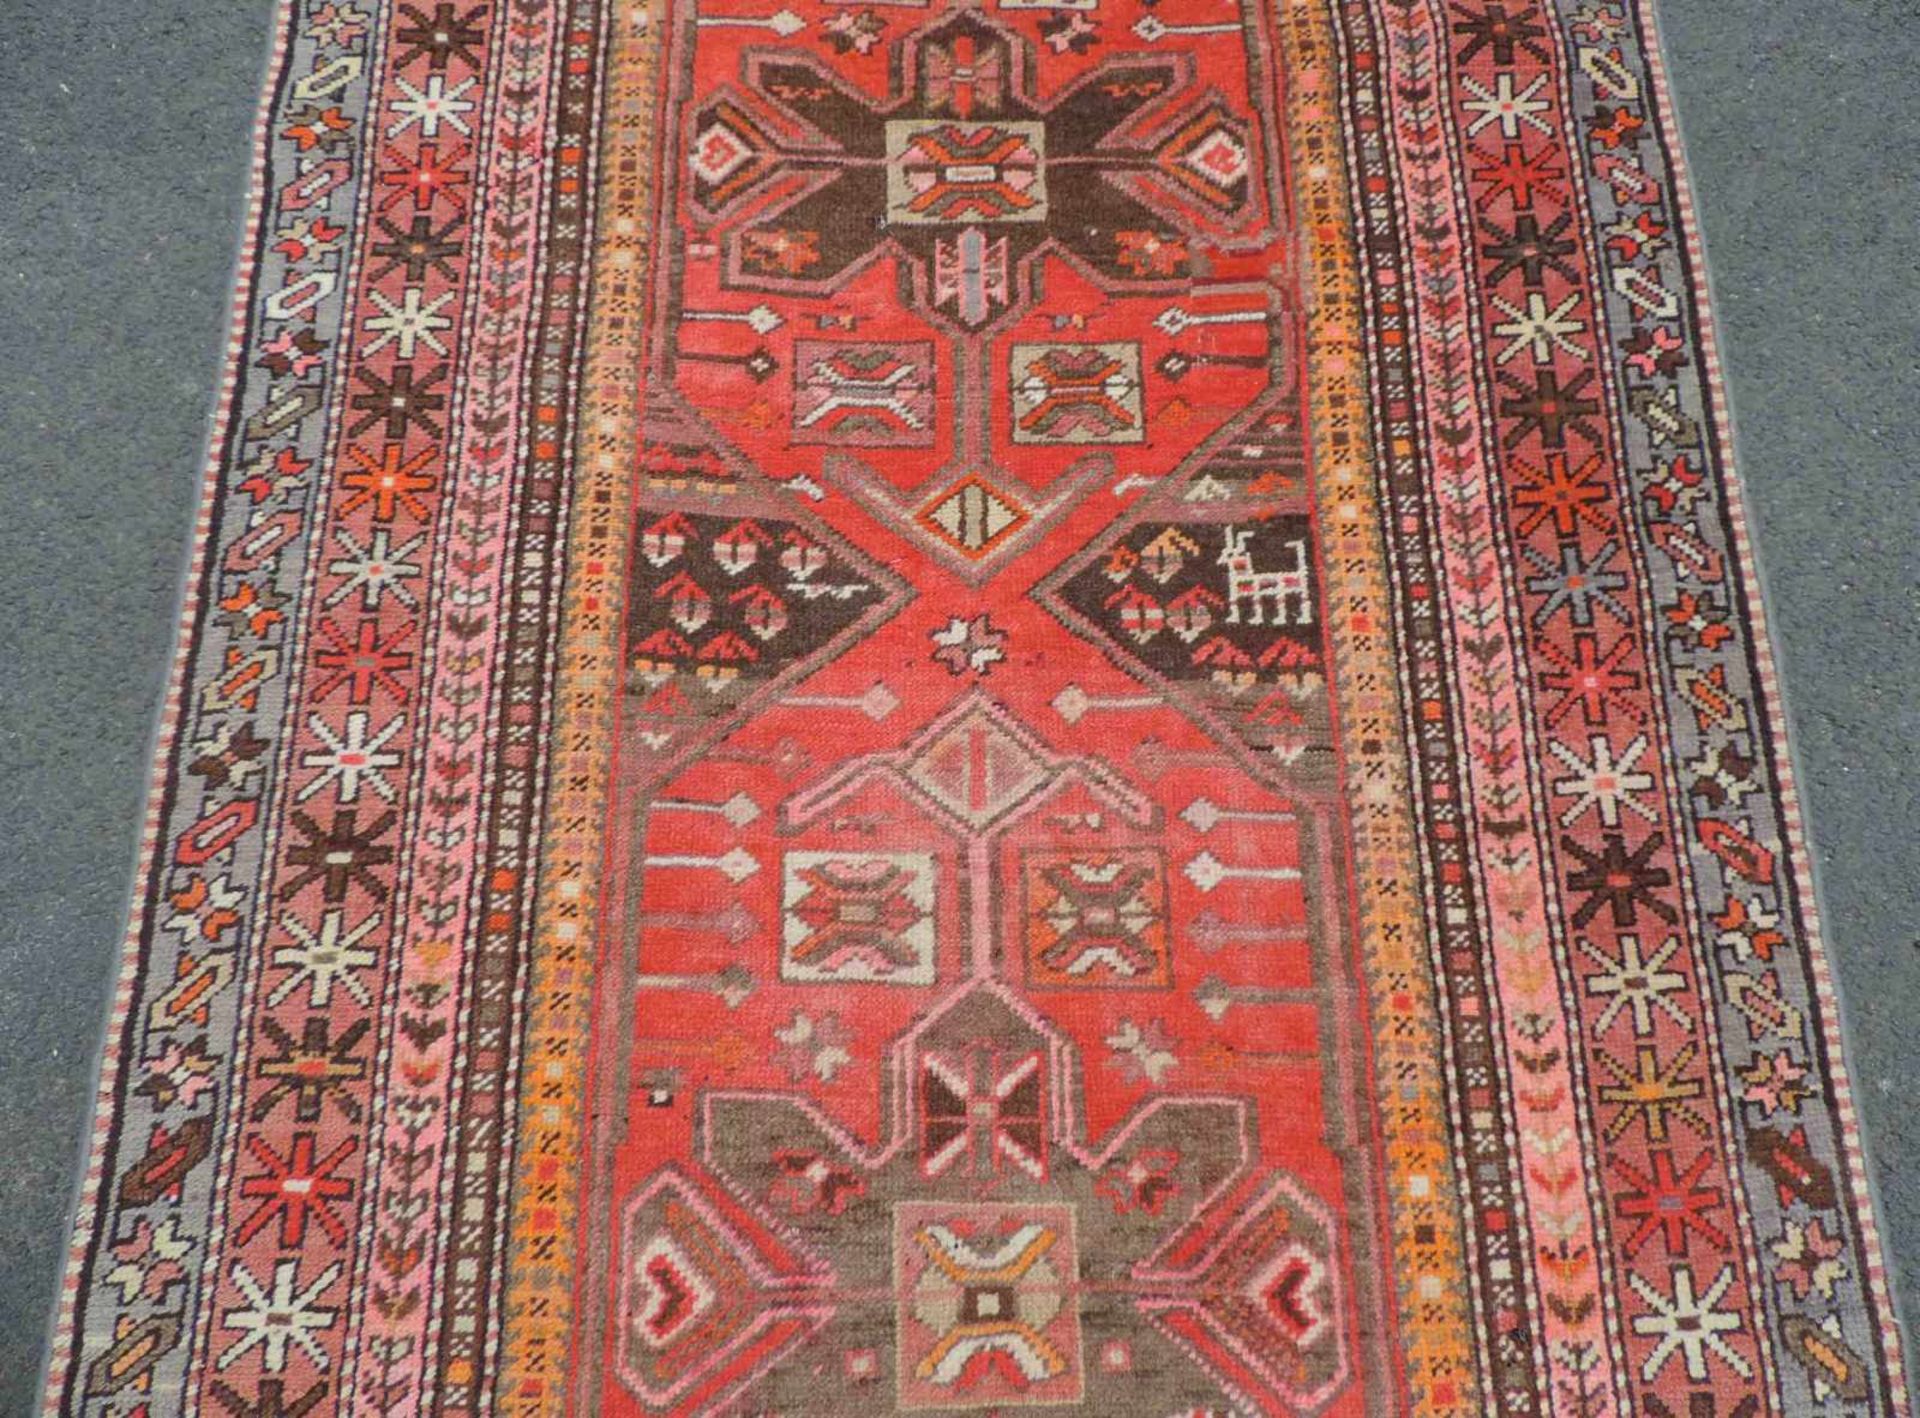 Karabagh Kaukasus Dorfteppich, alt, datiert 1349 (1921). 275 cm x 105 cm. Handgeknüpft. Wolle auf - Bild 3 aus 6